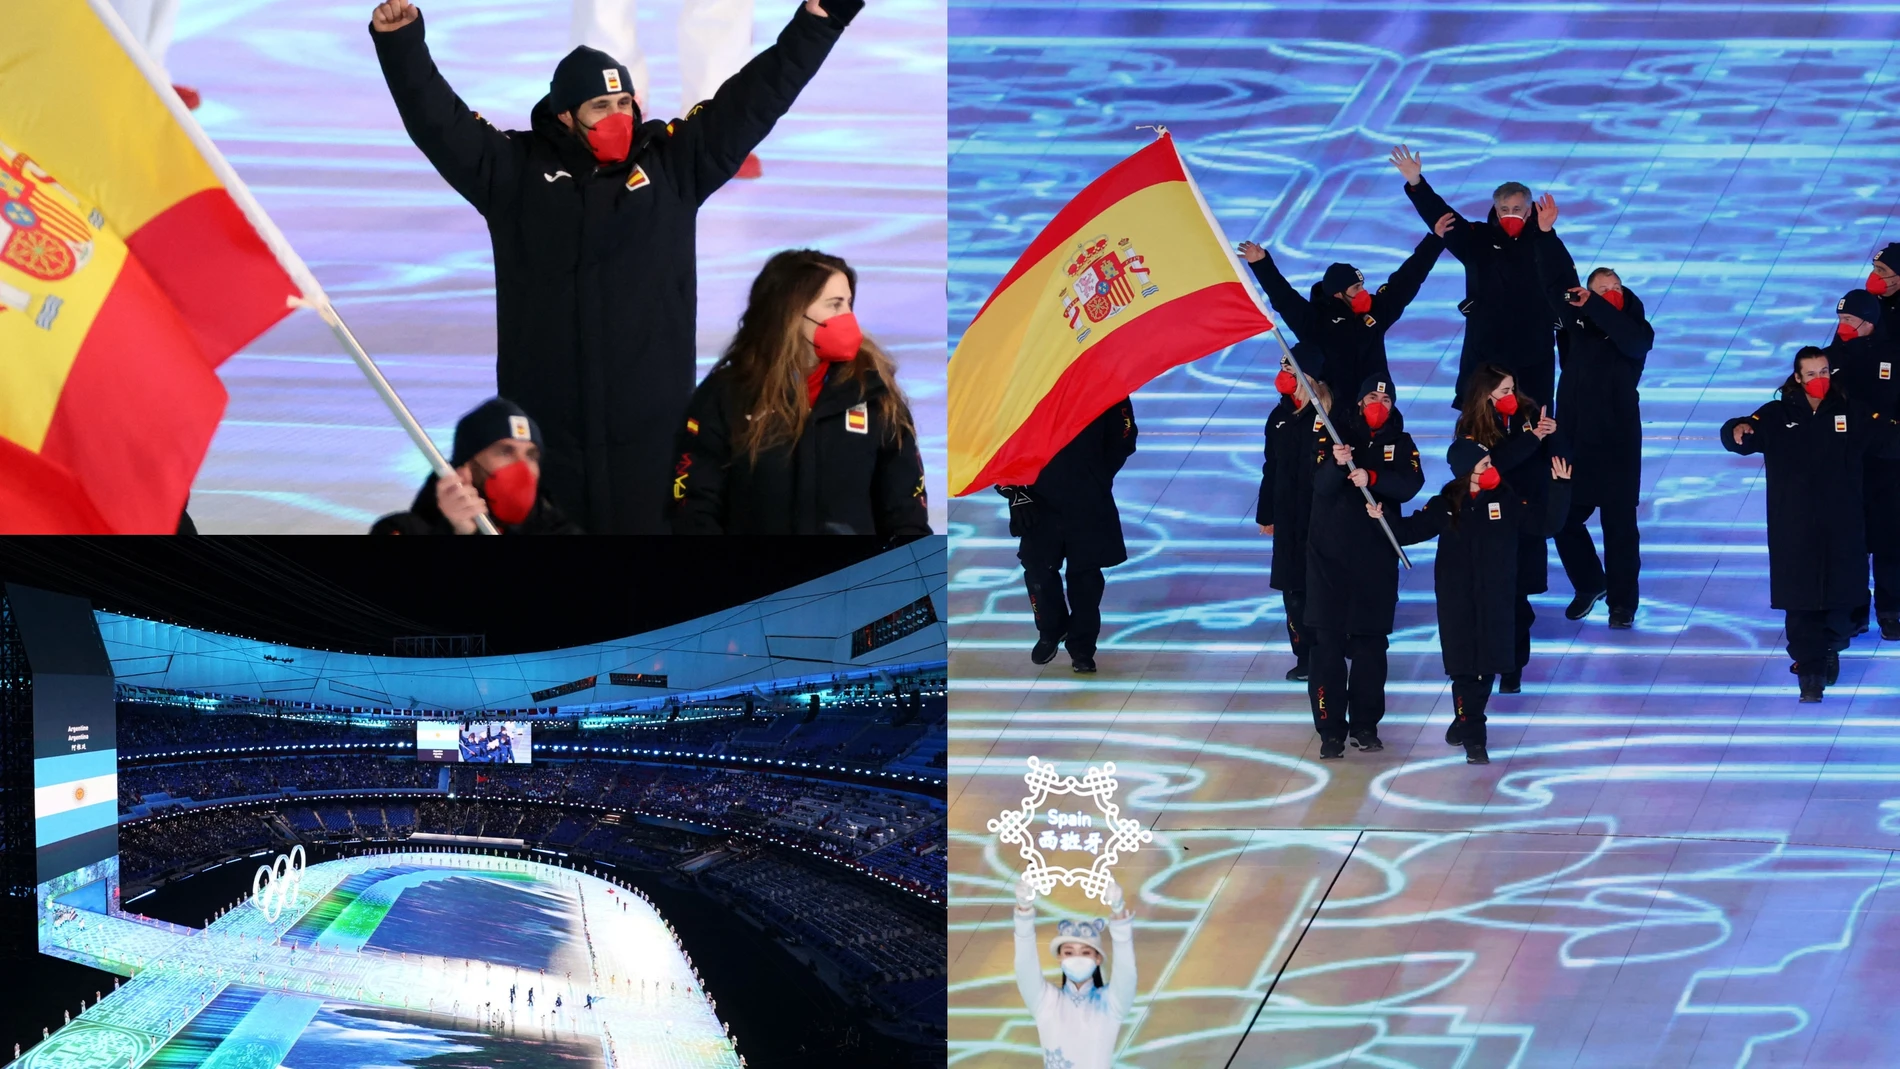 Así ha sido la ceremonia de inauguración de los Juegos Olímpicos de Invierno de Pekín 2022